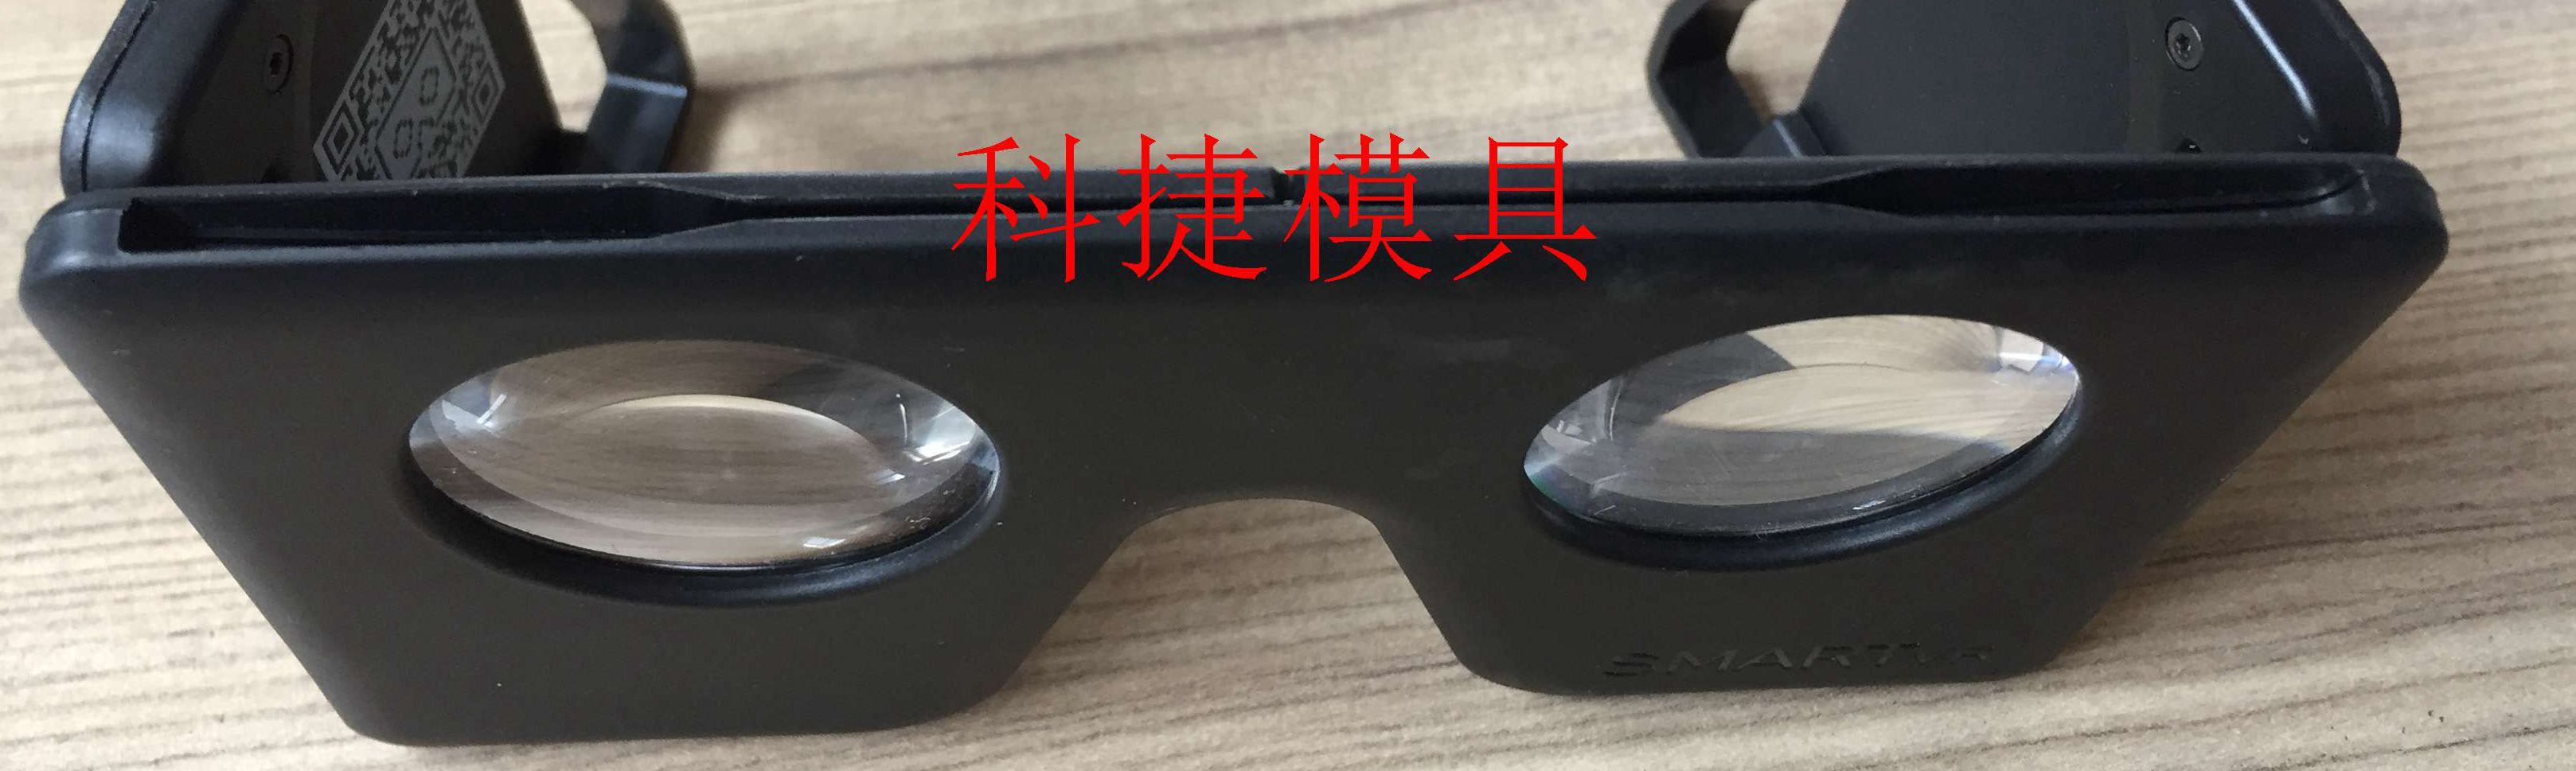 南京注塑模具厂3D眼镜 VR眼镜